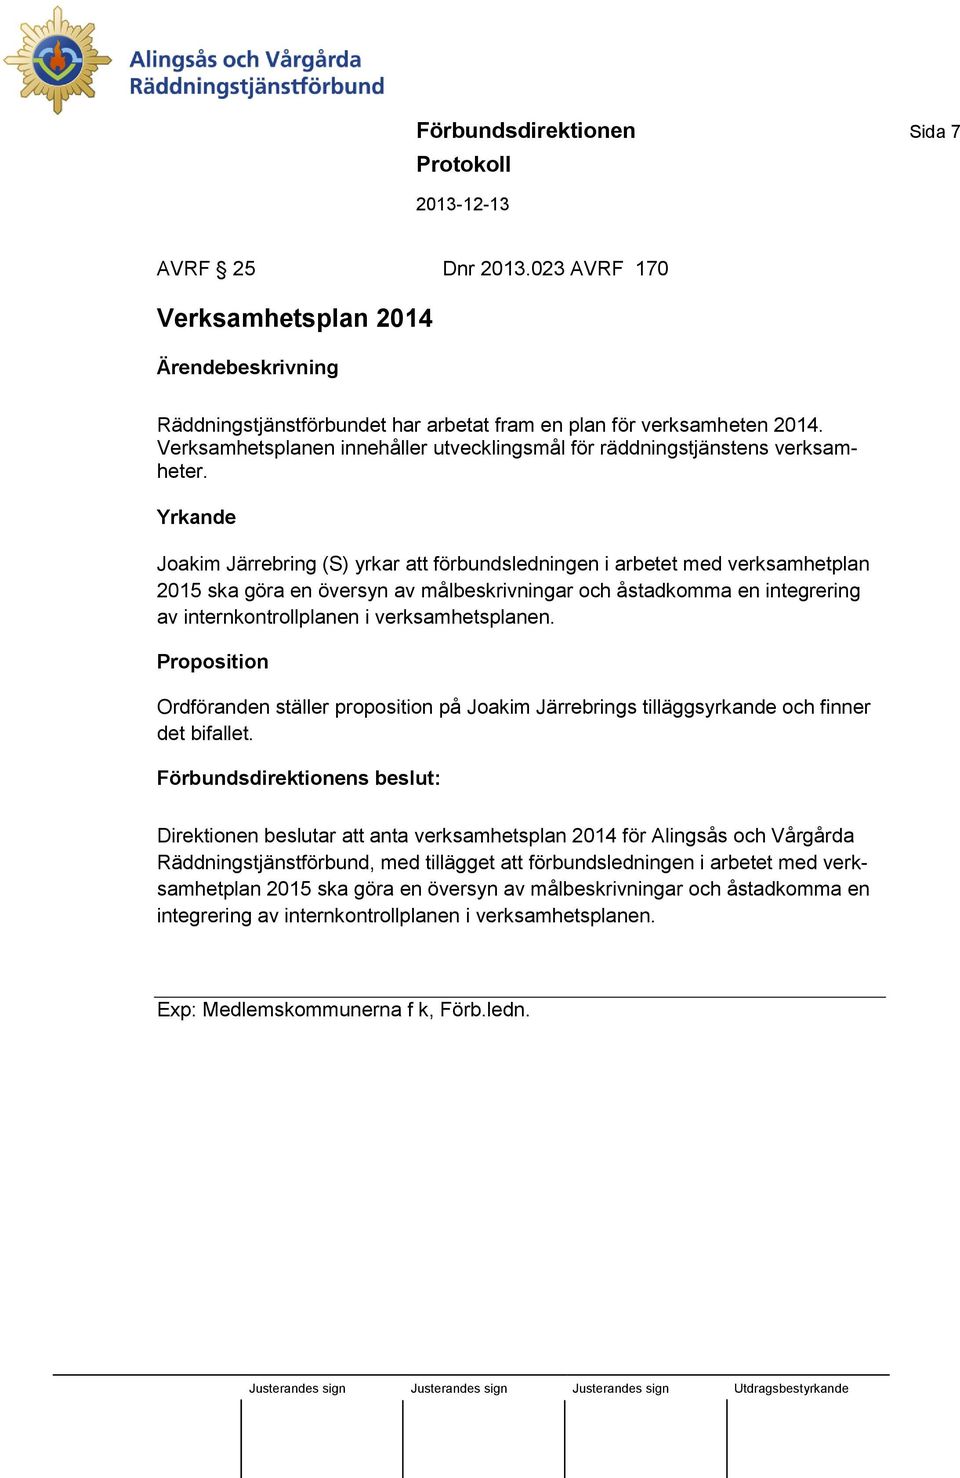 Yrkande Joakim Järrebring (S) yrkar att förbundsledningen i arbetet med verksamhetplan 2015 ska göra en översyn av målbeskrivningar och åstadkomma en integrering av internkontrollplanen i